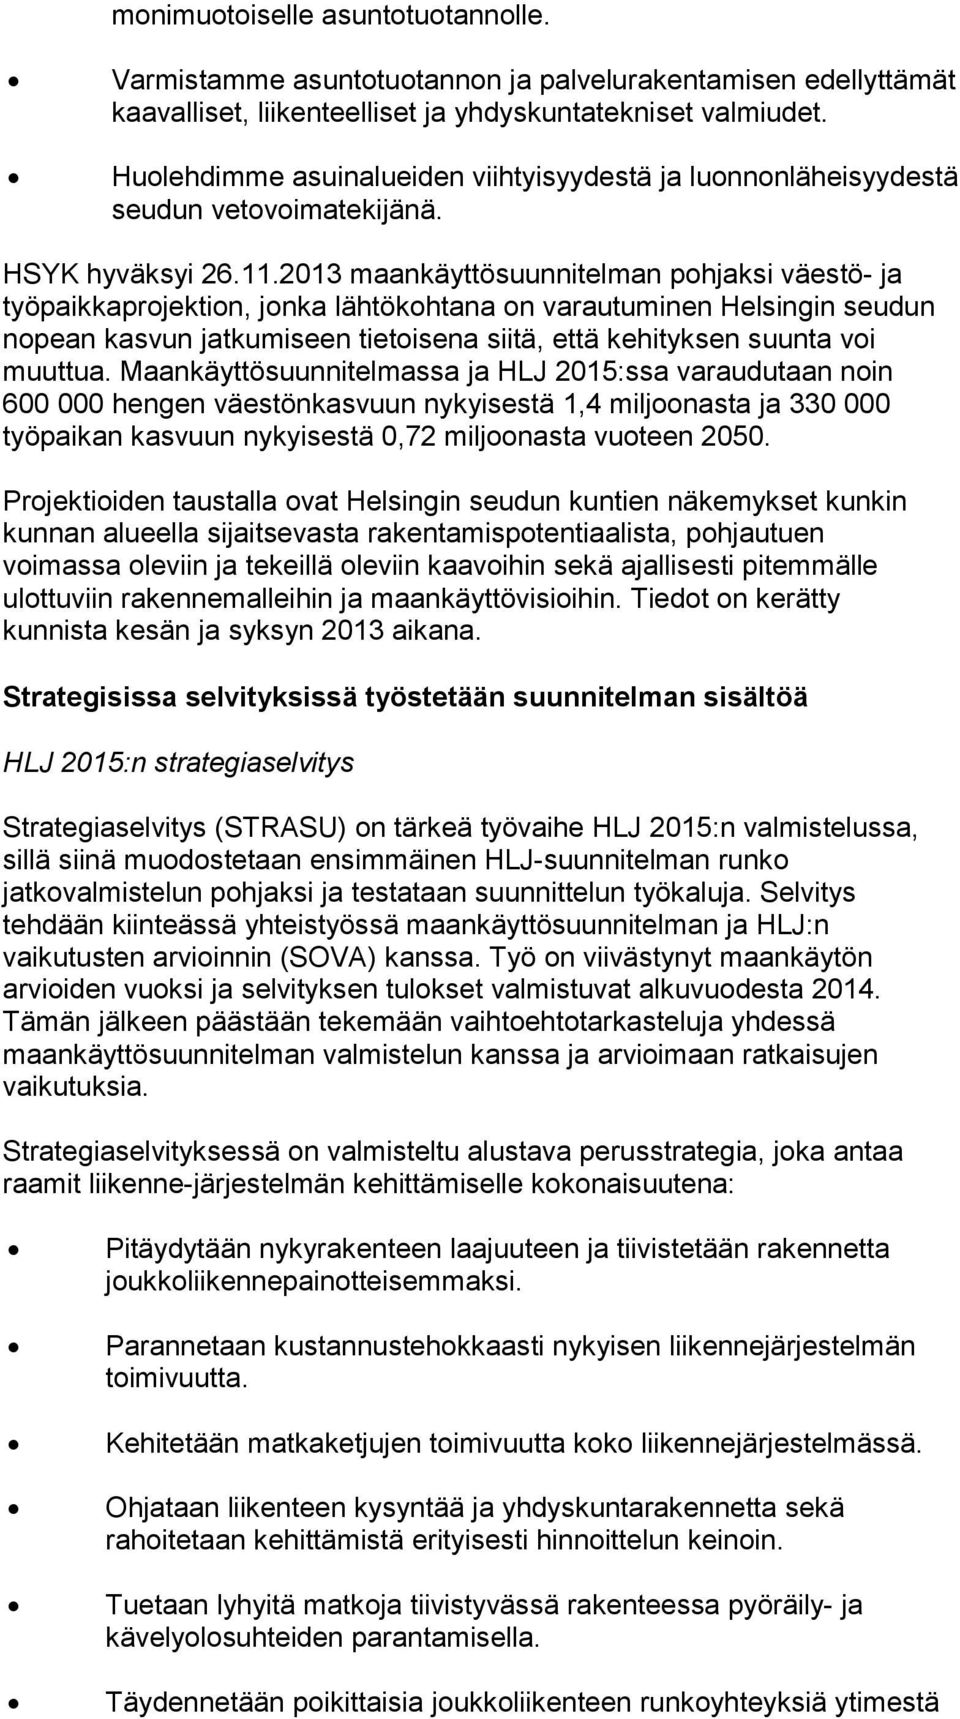 2013 maankäyttösuunnitelman pohjaksi väestö- ja työpaikkaprojektion, jonka lähtökohtana on varautuminen Helsingin seudun nopean kasvun jatkumiseen tietoisena siitä, että kehityksen suunta voi muuttua.